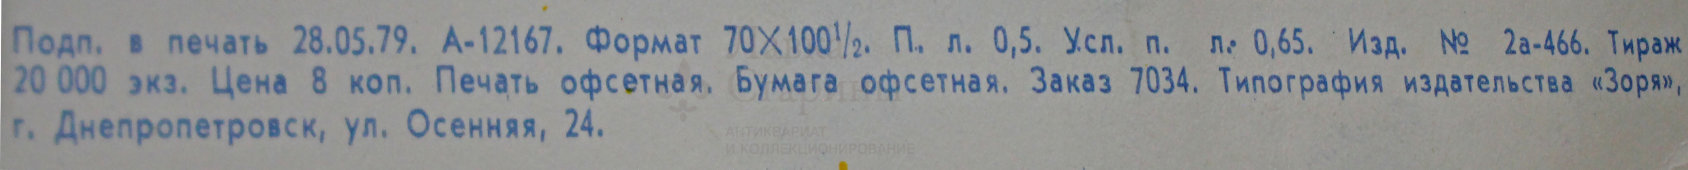 Советский агитационный плакат «Рабочей смекалке - инженерный расчет!», художник А. Добров, 1979 г.